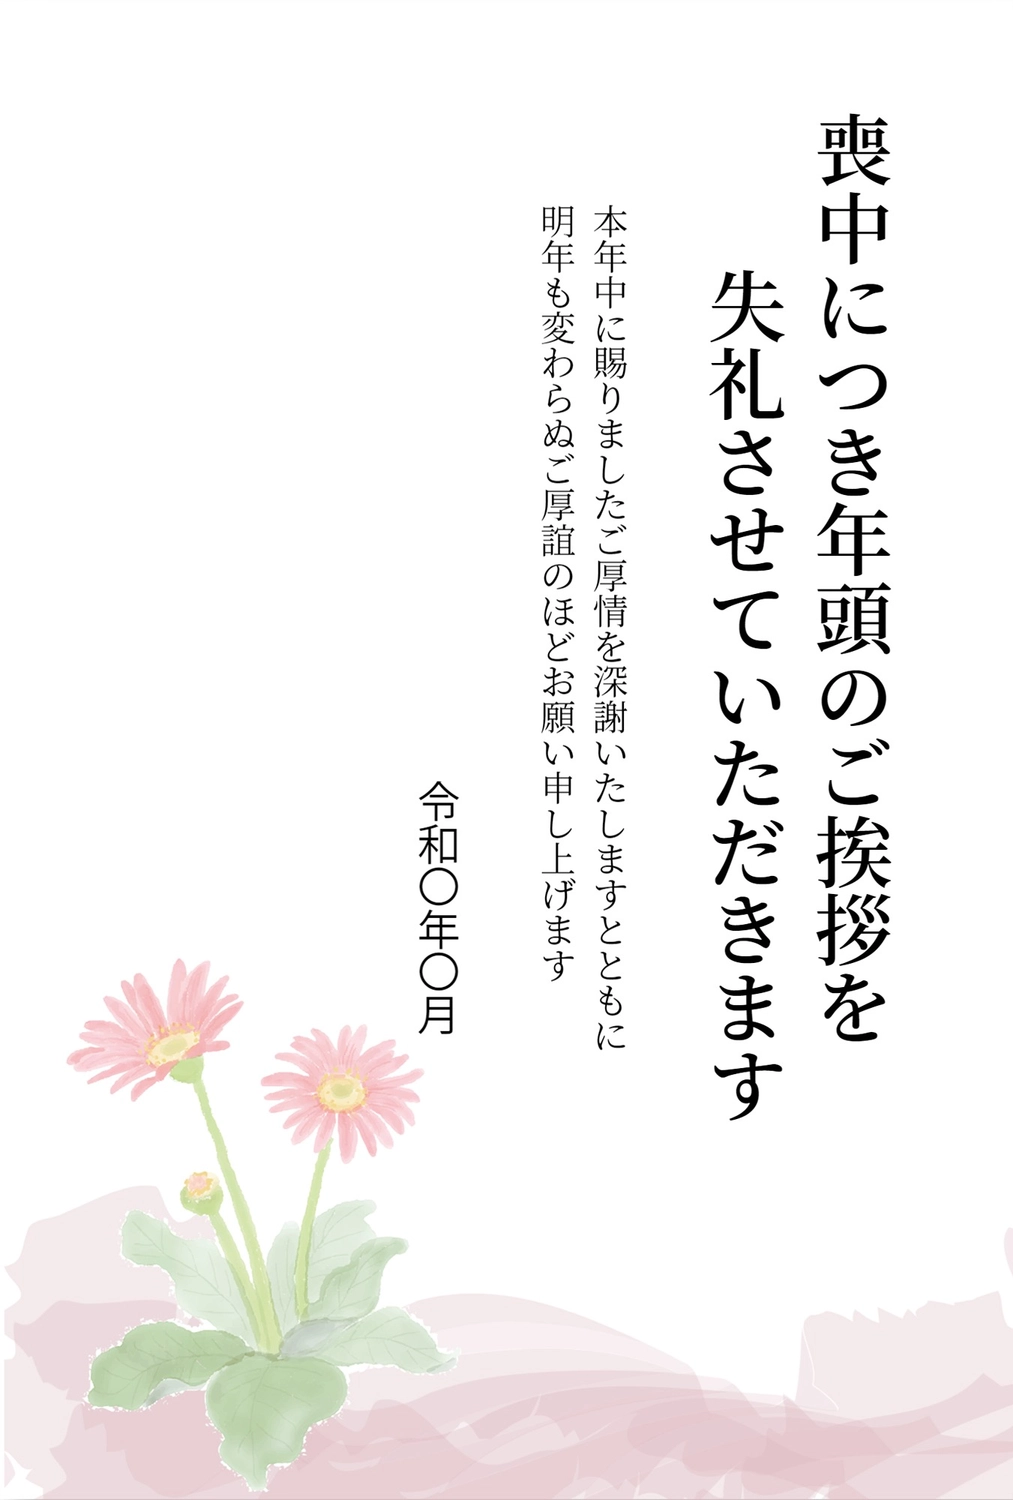 ピンクの花の喪中はがき, New Year's greeting card, Pink Flowers, death, Mourning Postcard template